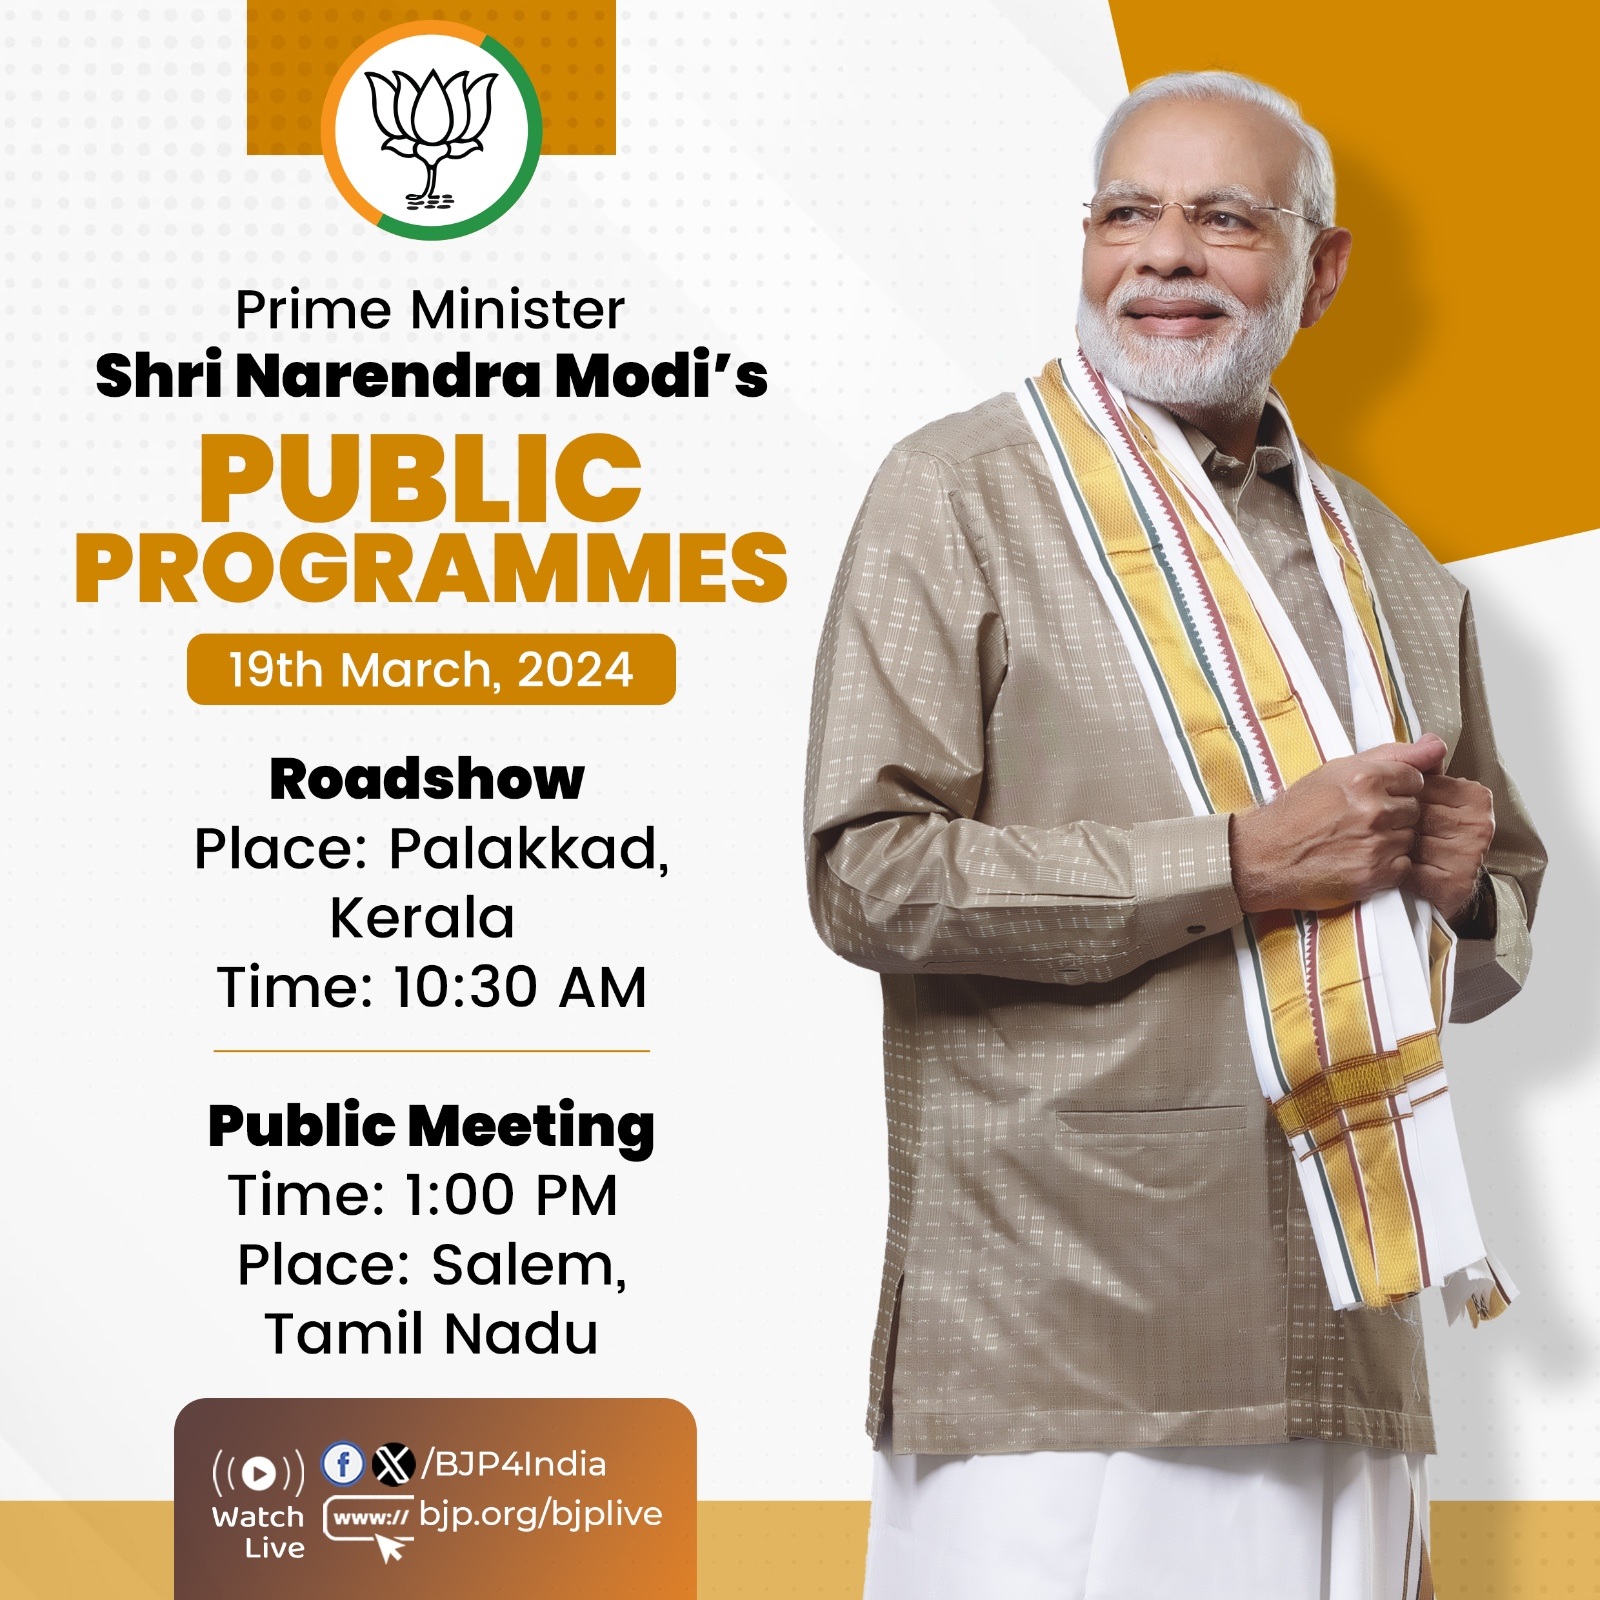 प्रधानमंत्री नरेन्द्र मोदी के आज के कार्यक्रम को भाजपा ने अपने एक्स हैंडल पर पोस्ट किया है।